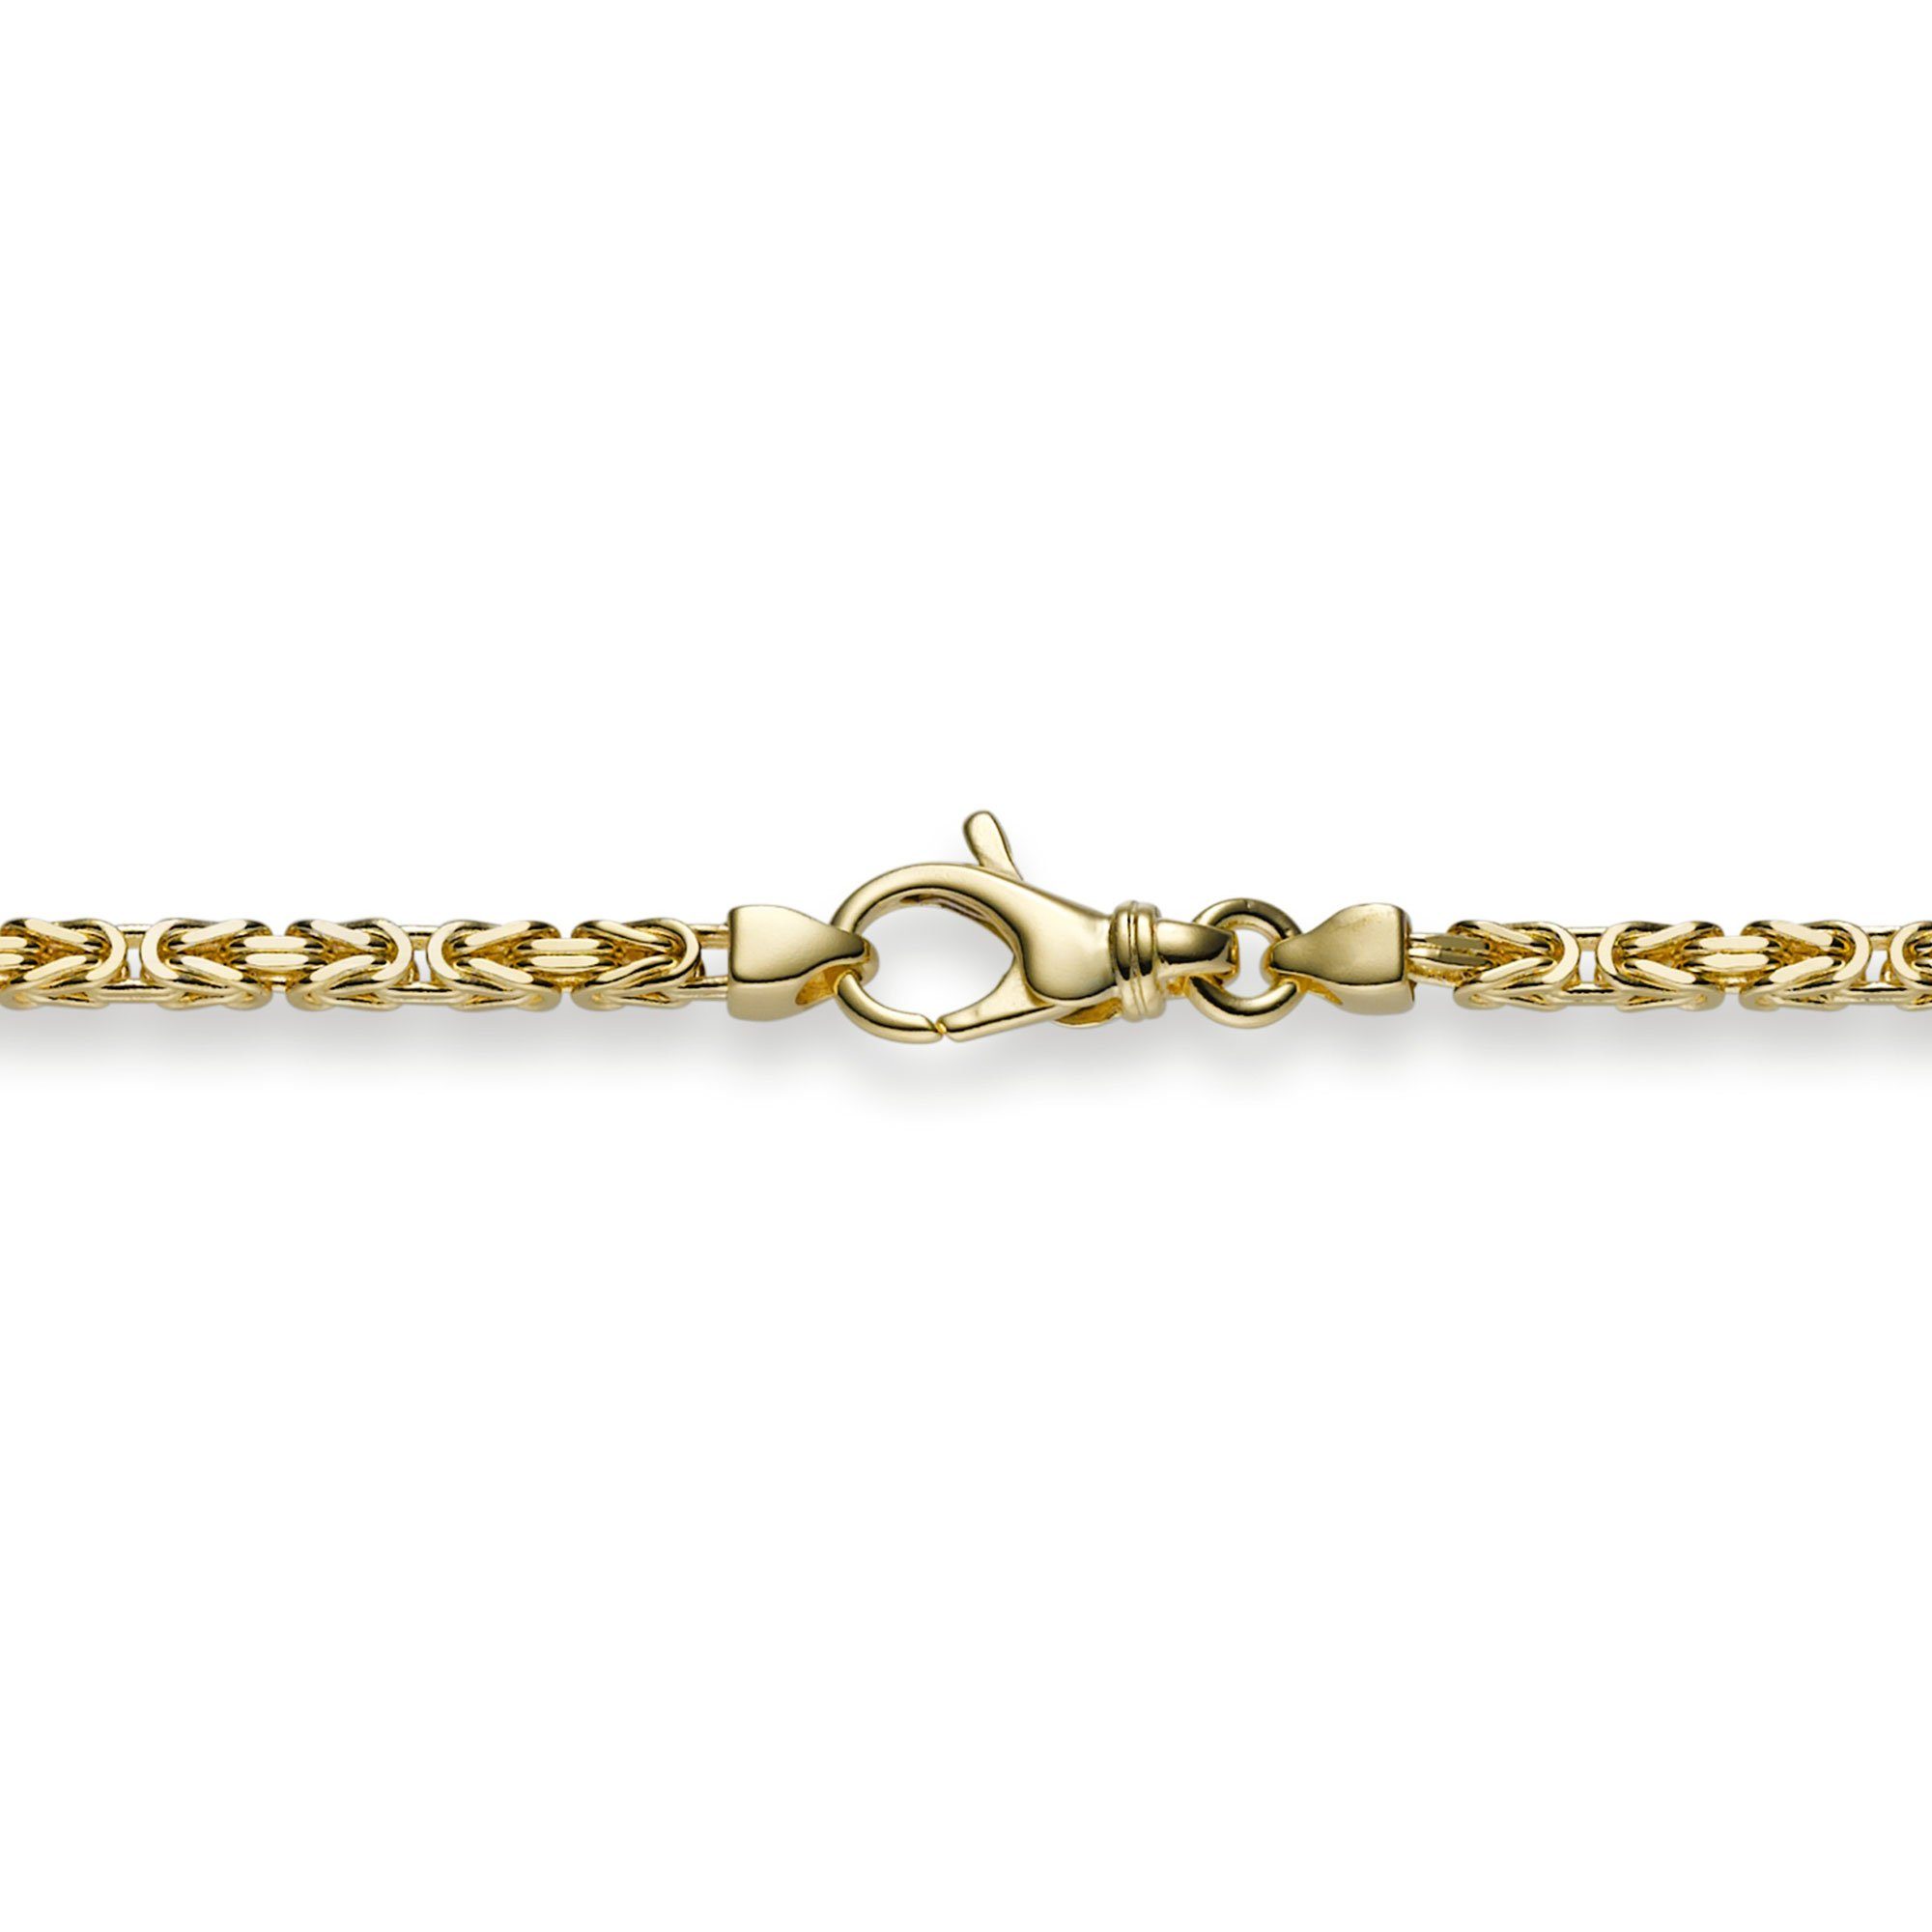 HOPLO Goldarmband Goldkette Königskette Länge 19cm - Breite 2,5mm - 750-18 Karat Gold